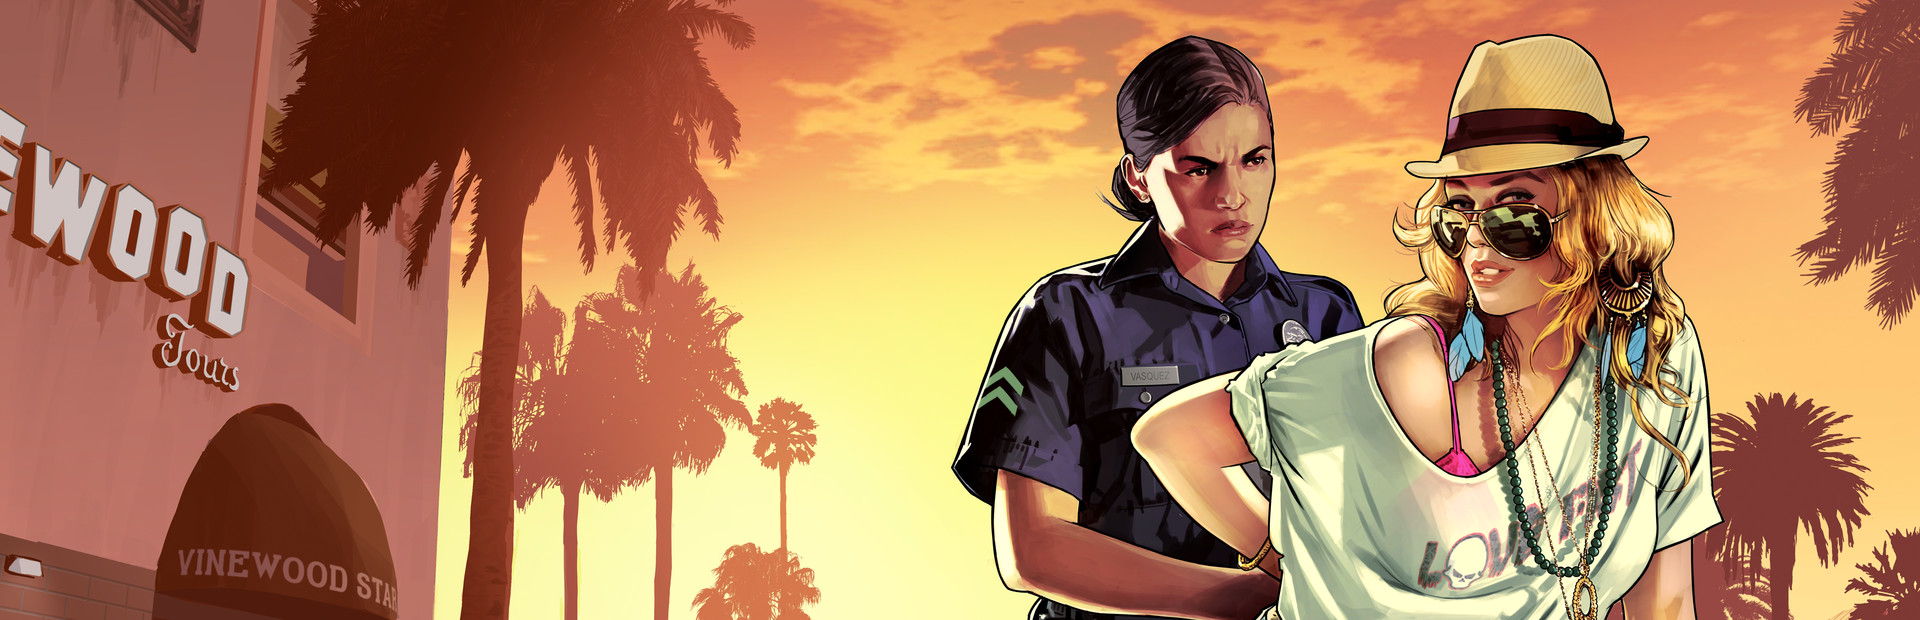 Grand Theft Auto V cover image